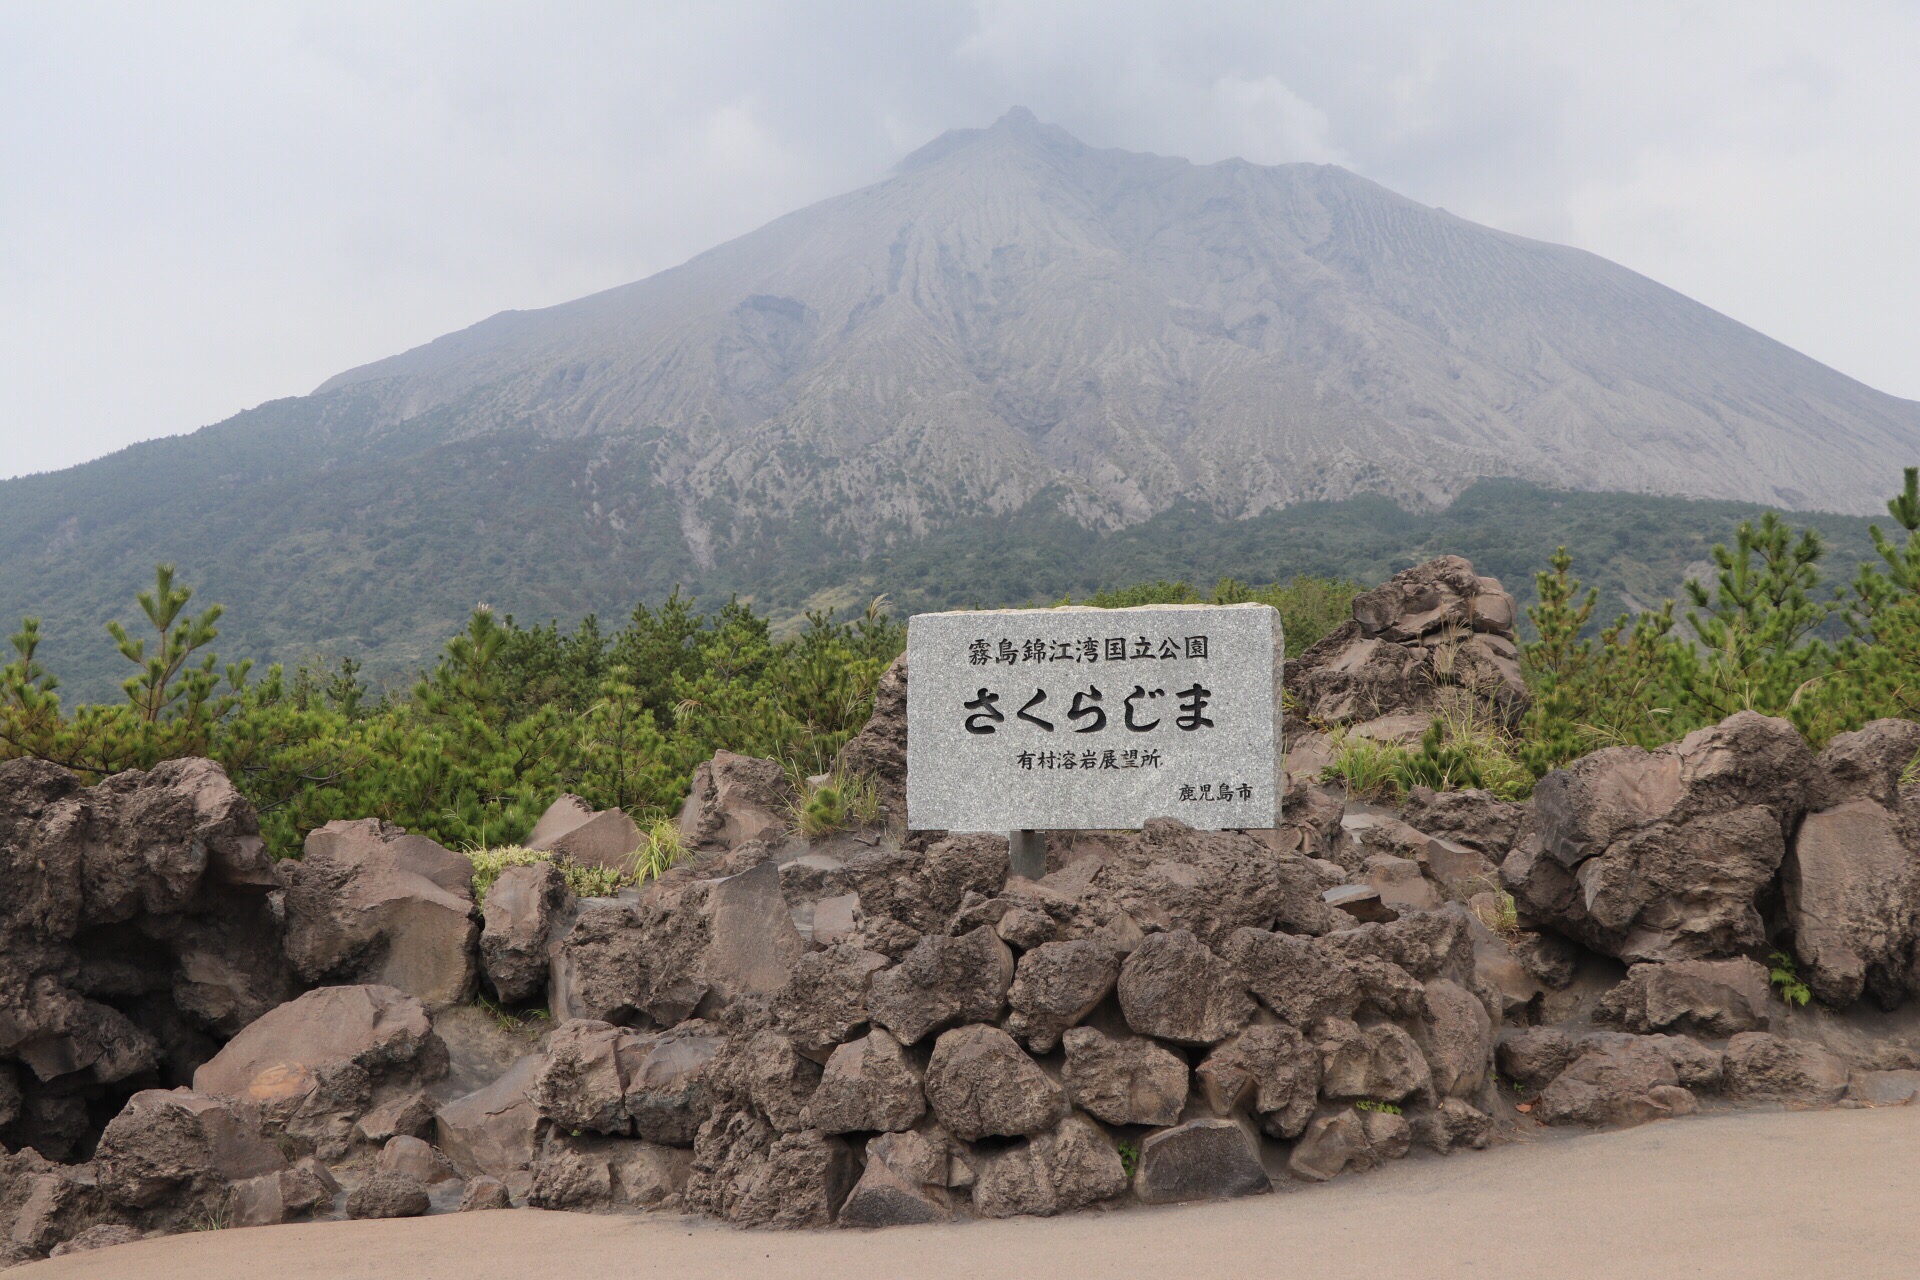 换个角度观望 火山 樱岛